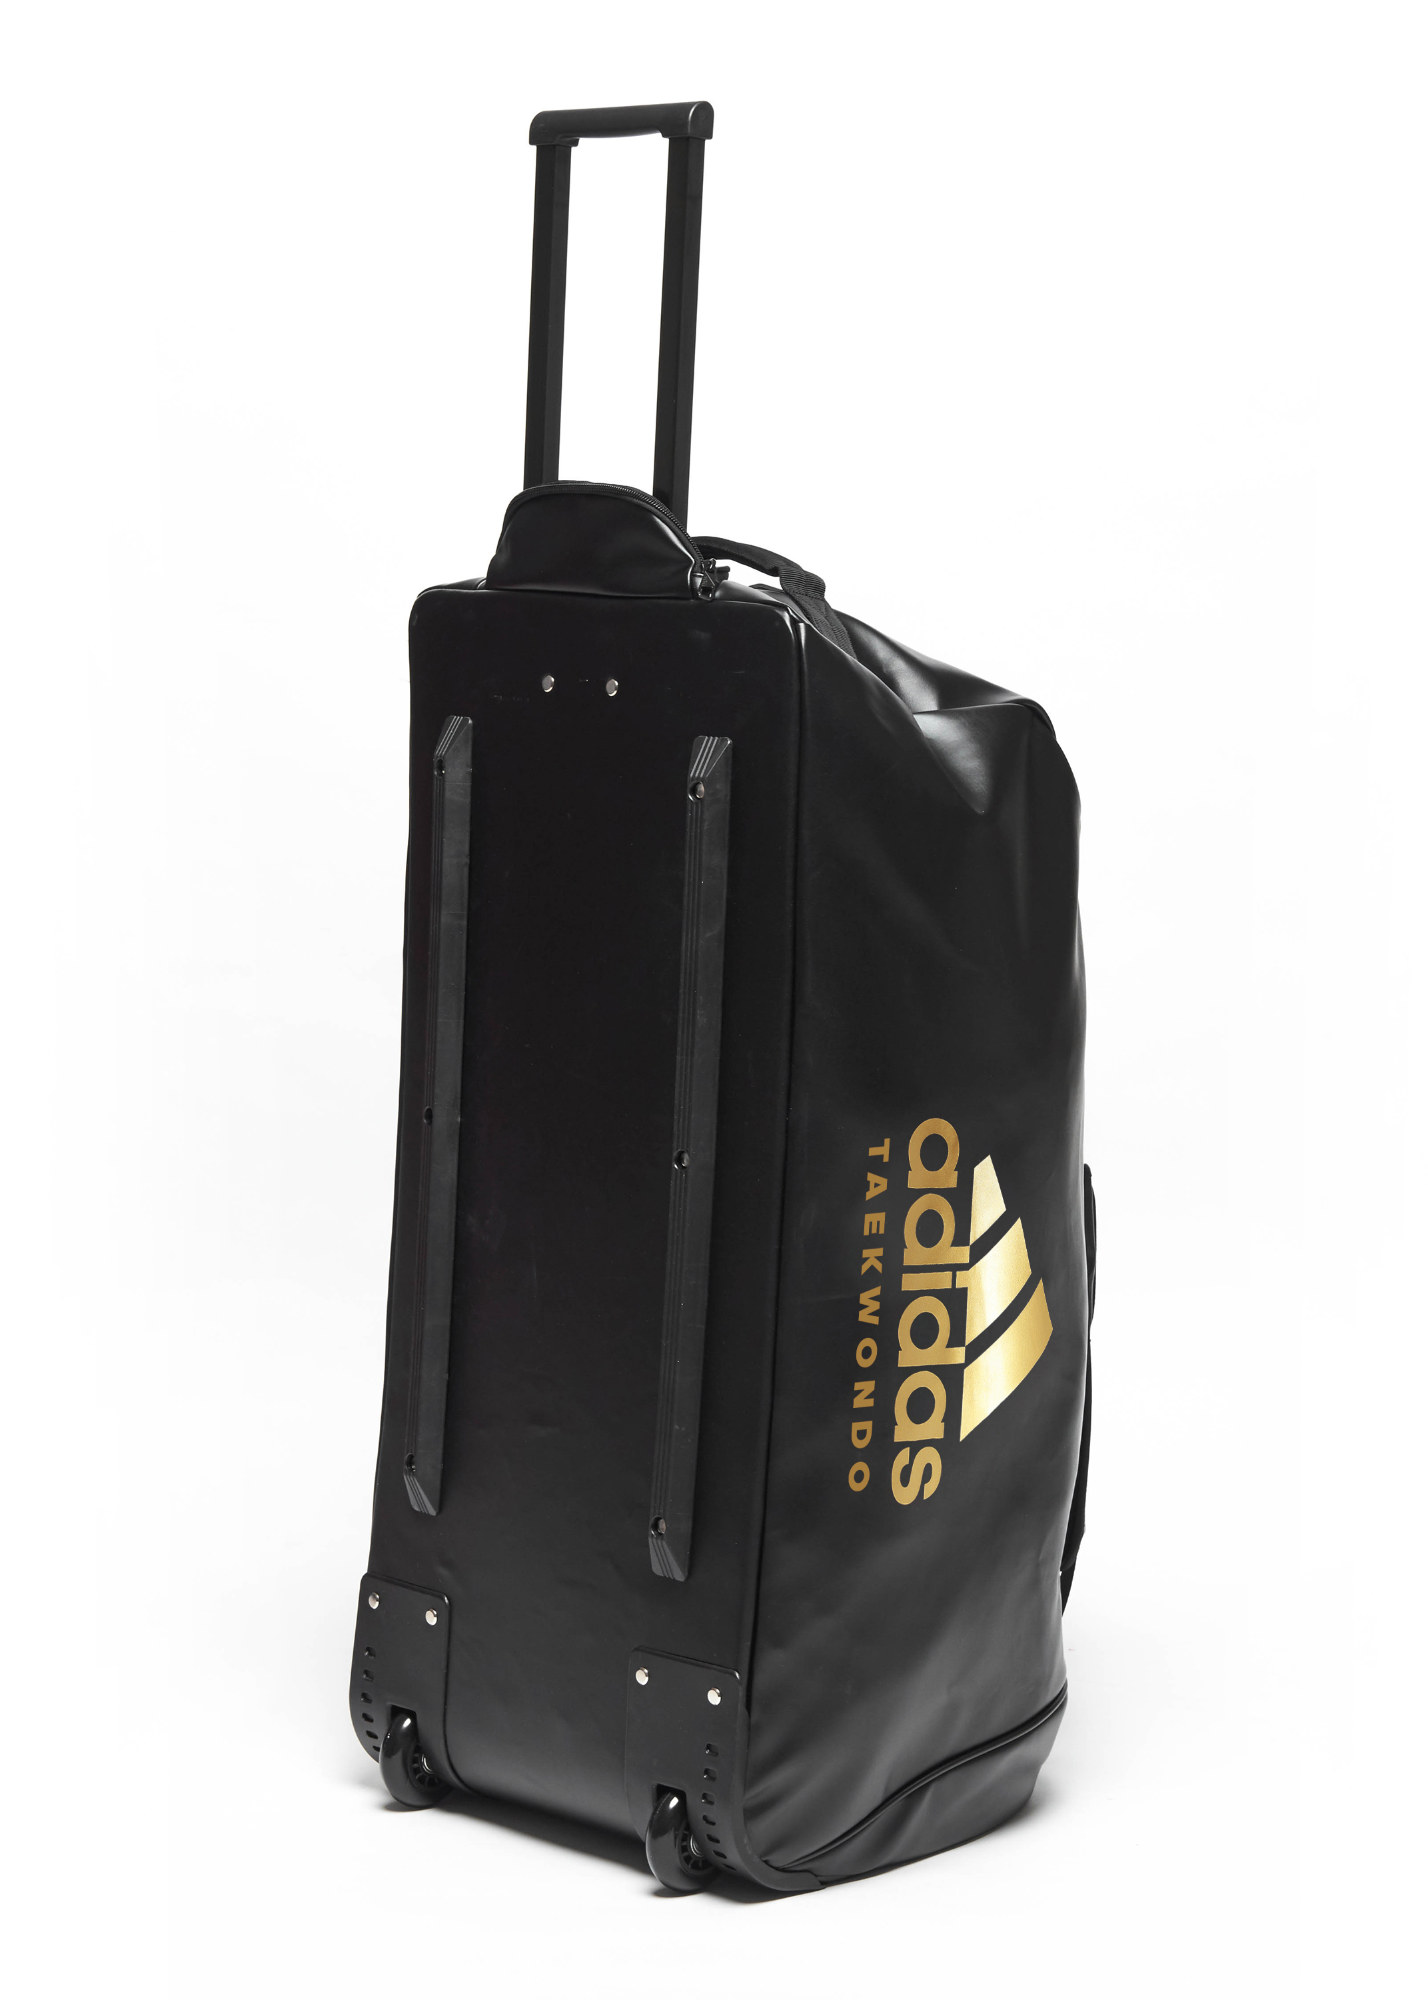 adidas trolley Taekwondo adiACC056T PU, black/gold 